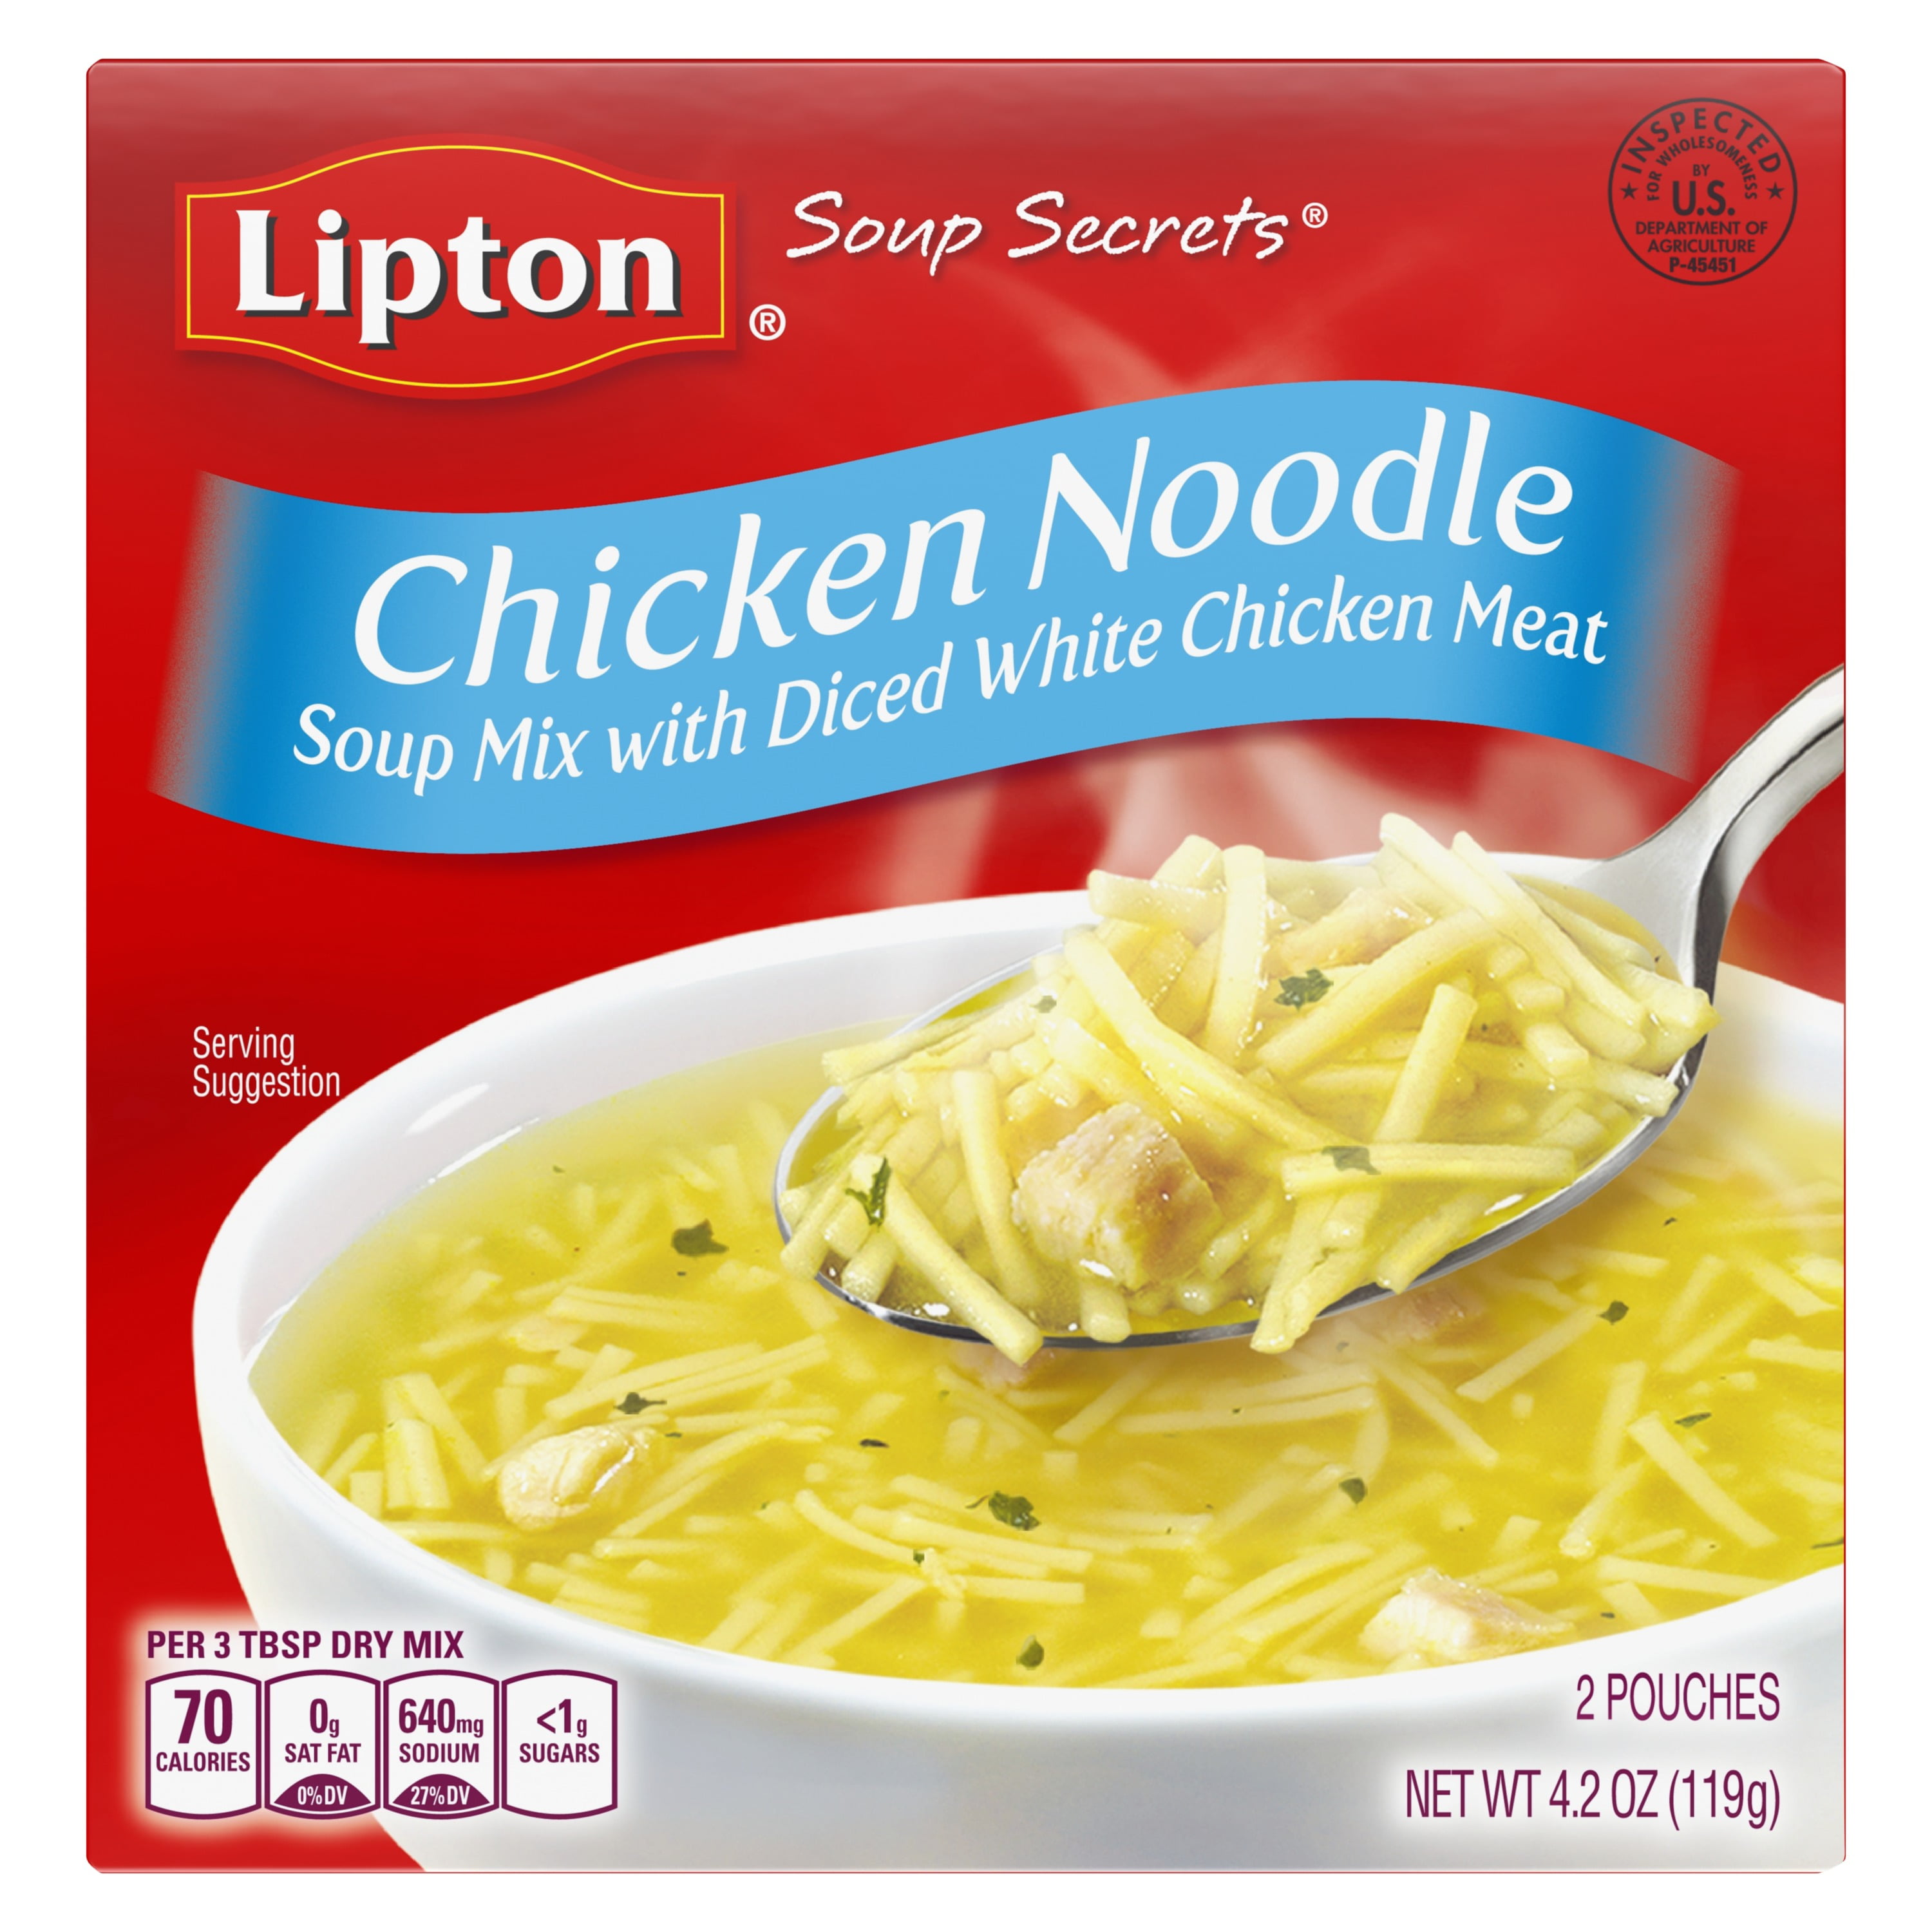 Lipton Soup Secrets Chicken Noodle Instant Soup Mix, 4.2 Oz, 2 Count